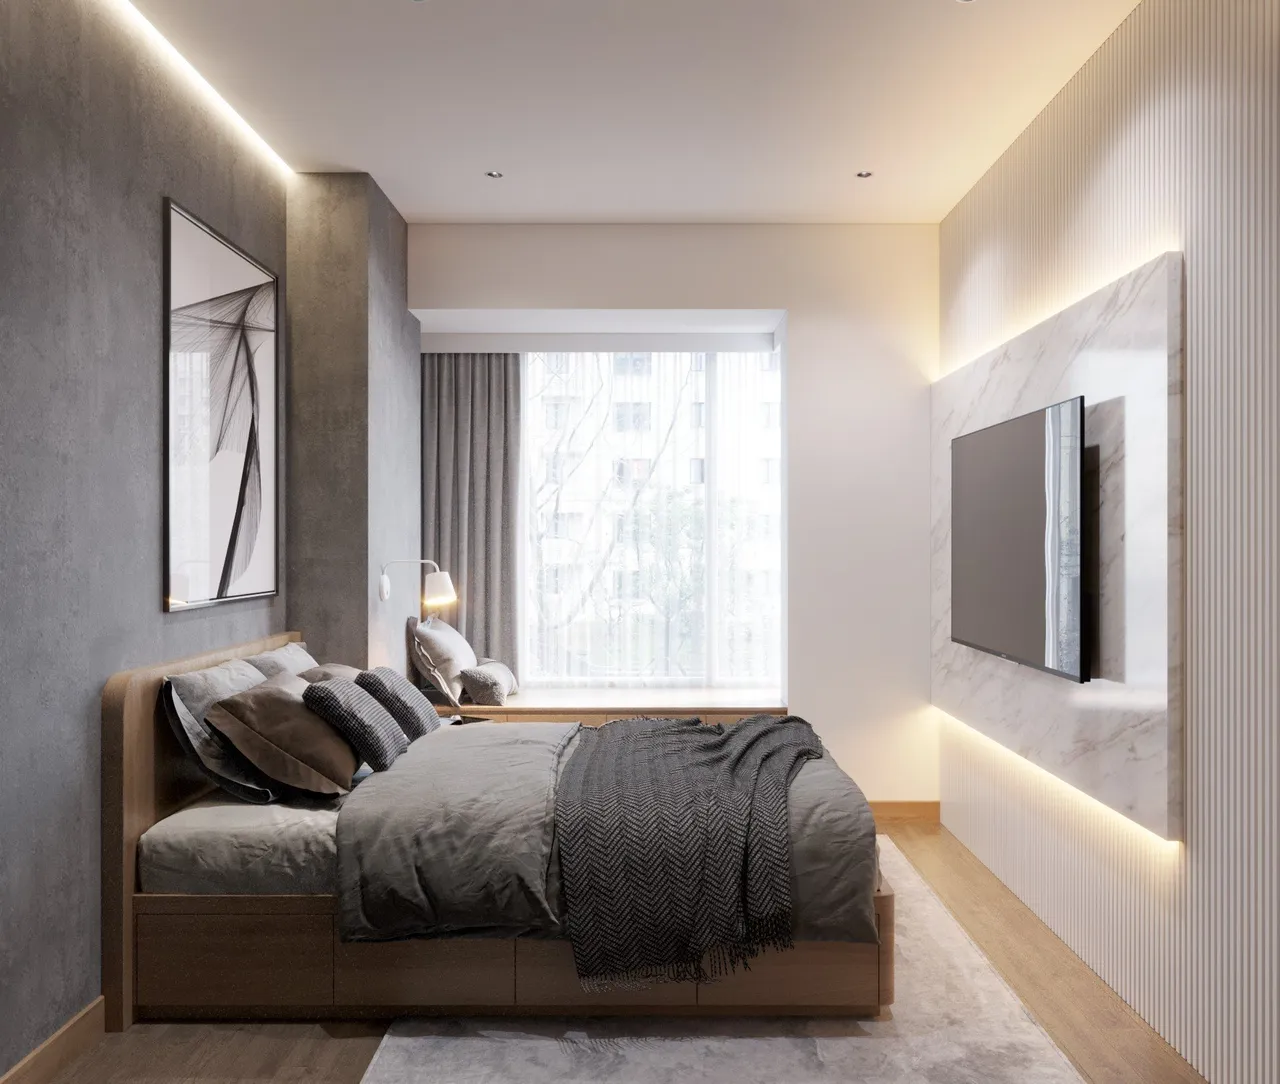 Concept nội thất phòng ngủ Căn hộ The Peak Midtown Phú Mỹ Hưng phong cách Tối giản Minimalist